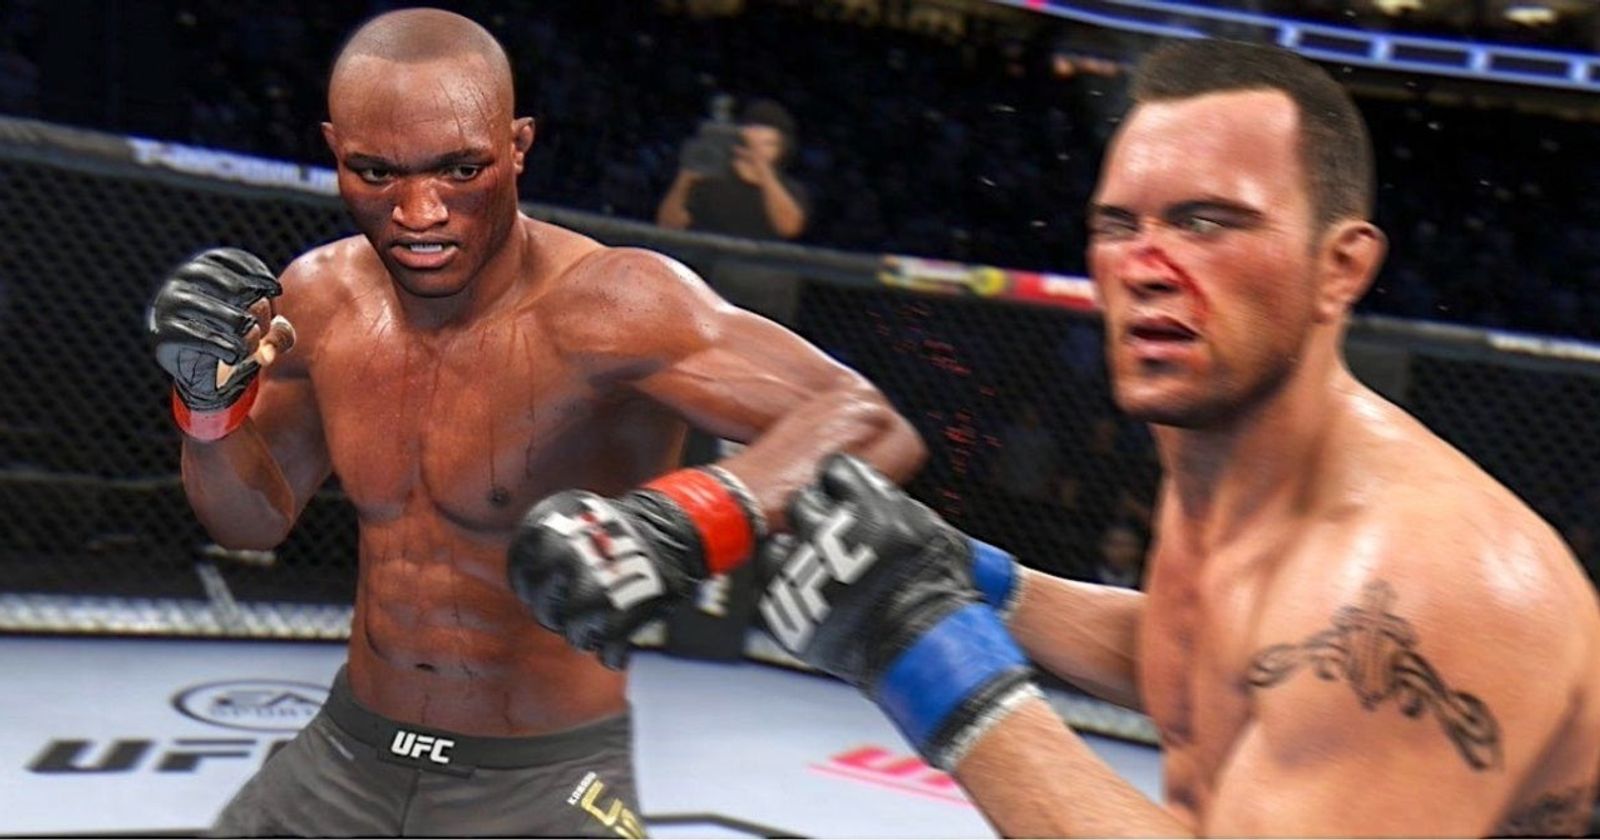 EA Sports 'UFC 5' Announcement Trailer